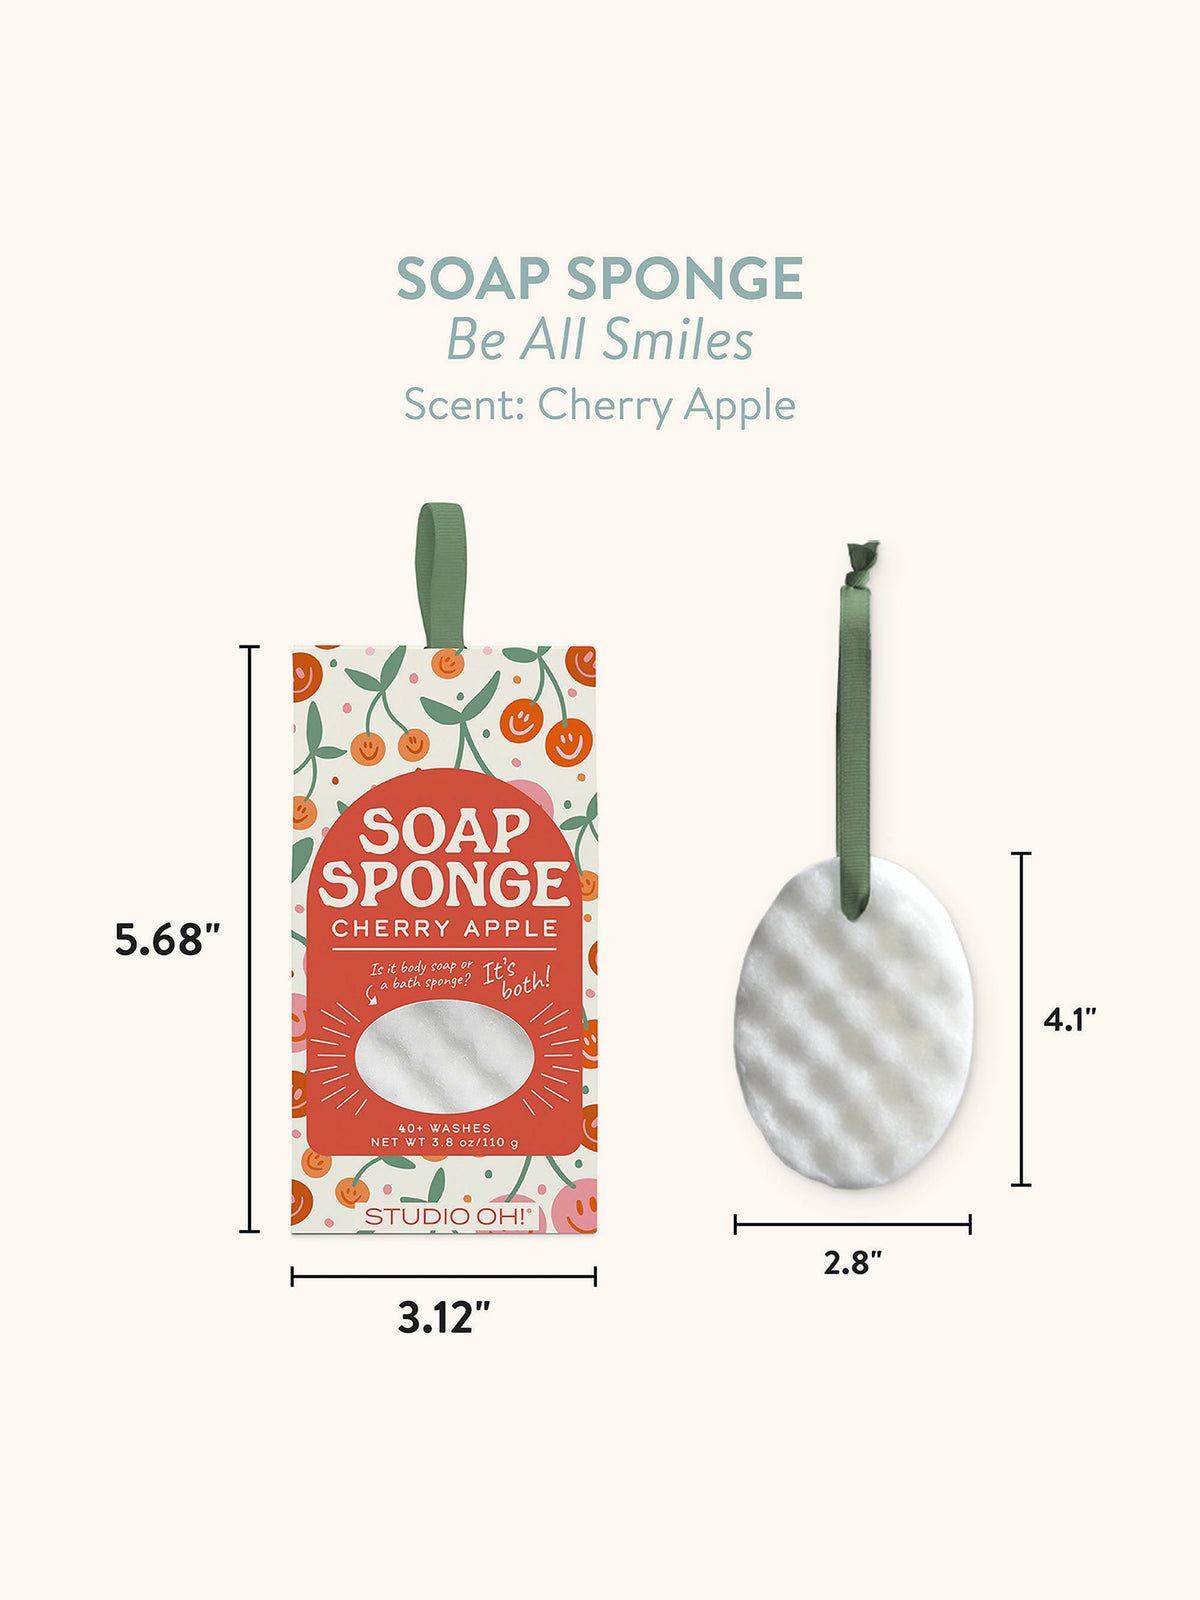 99% Angel Soap in a Sponge